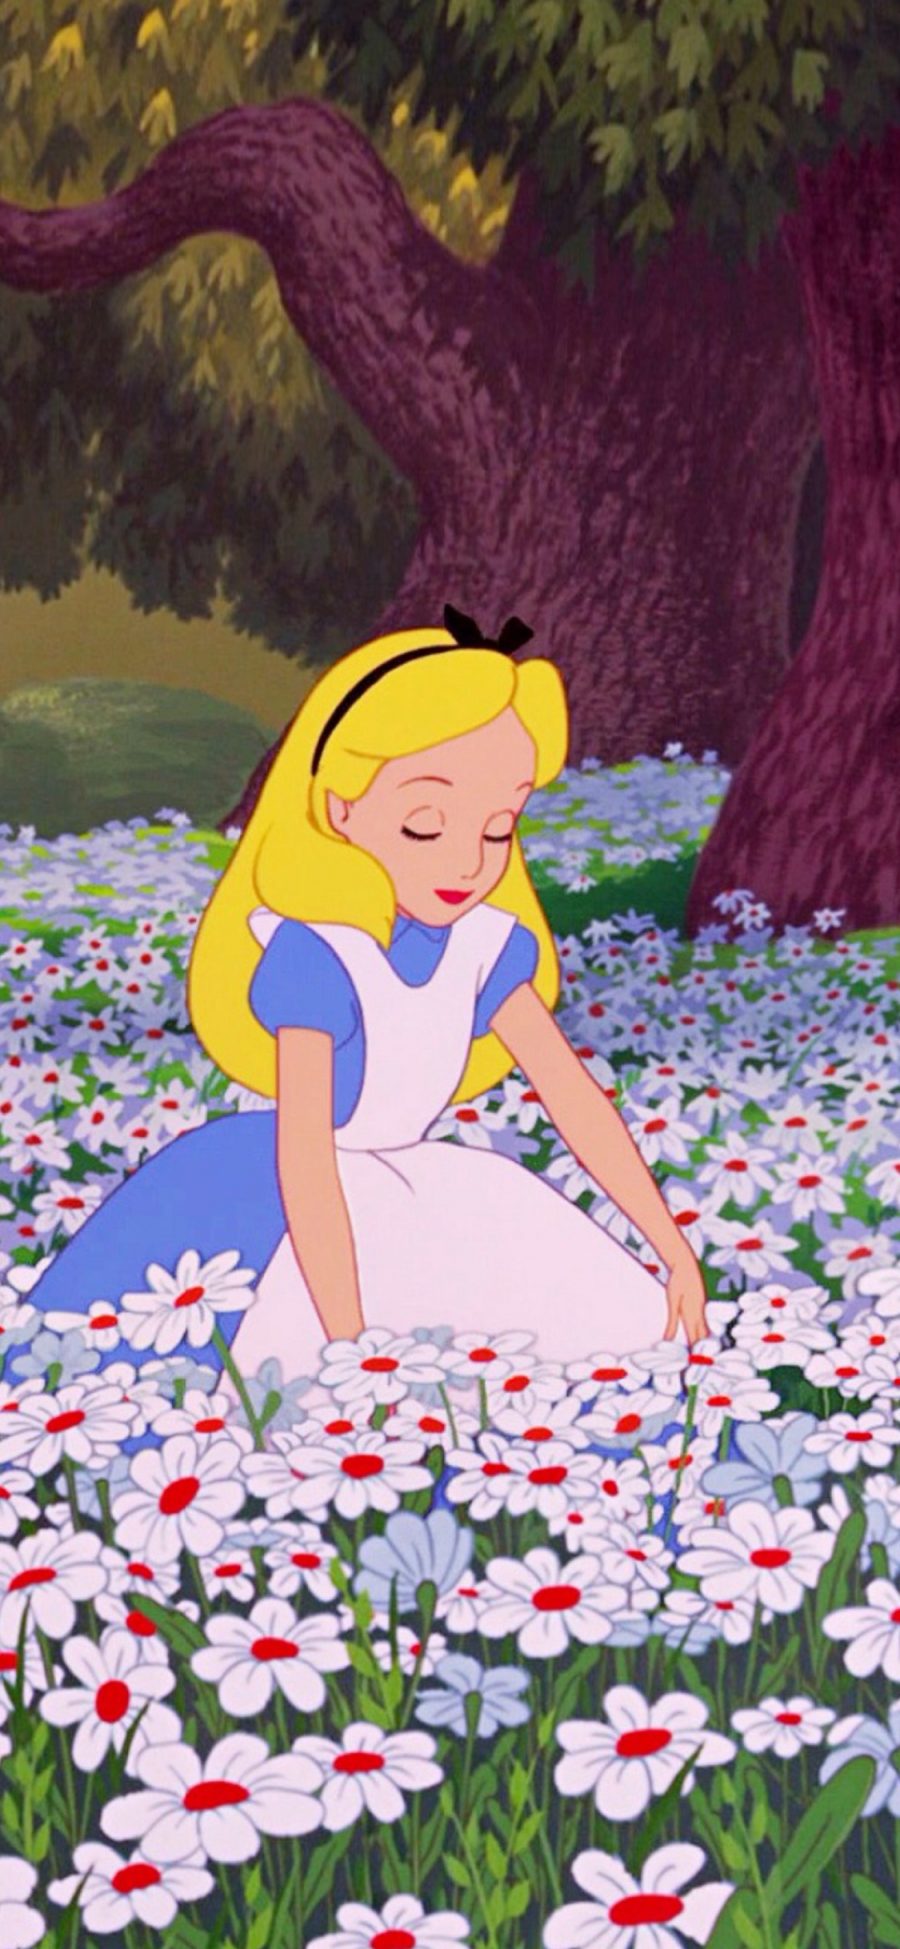 [2436×1125]迪士尼 动画 爱丽丝梦游仙境 爱丽丝公主 苹果手机动漫壁纸图片